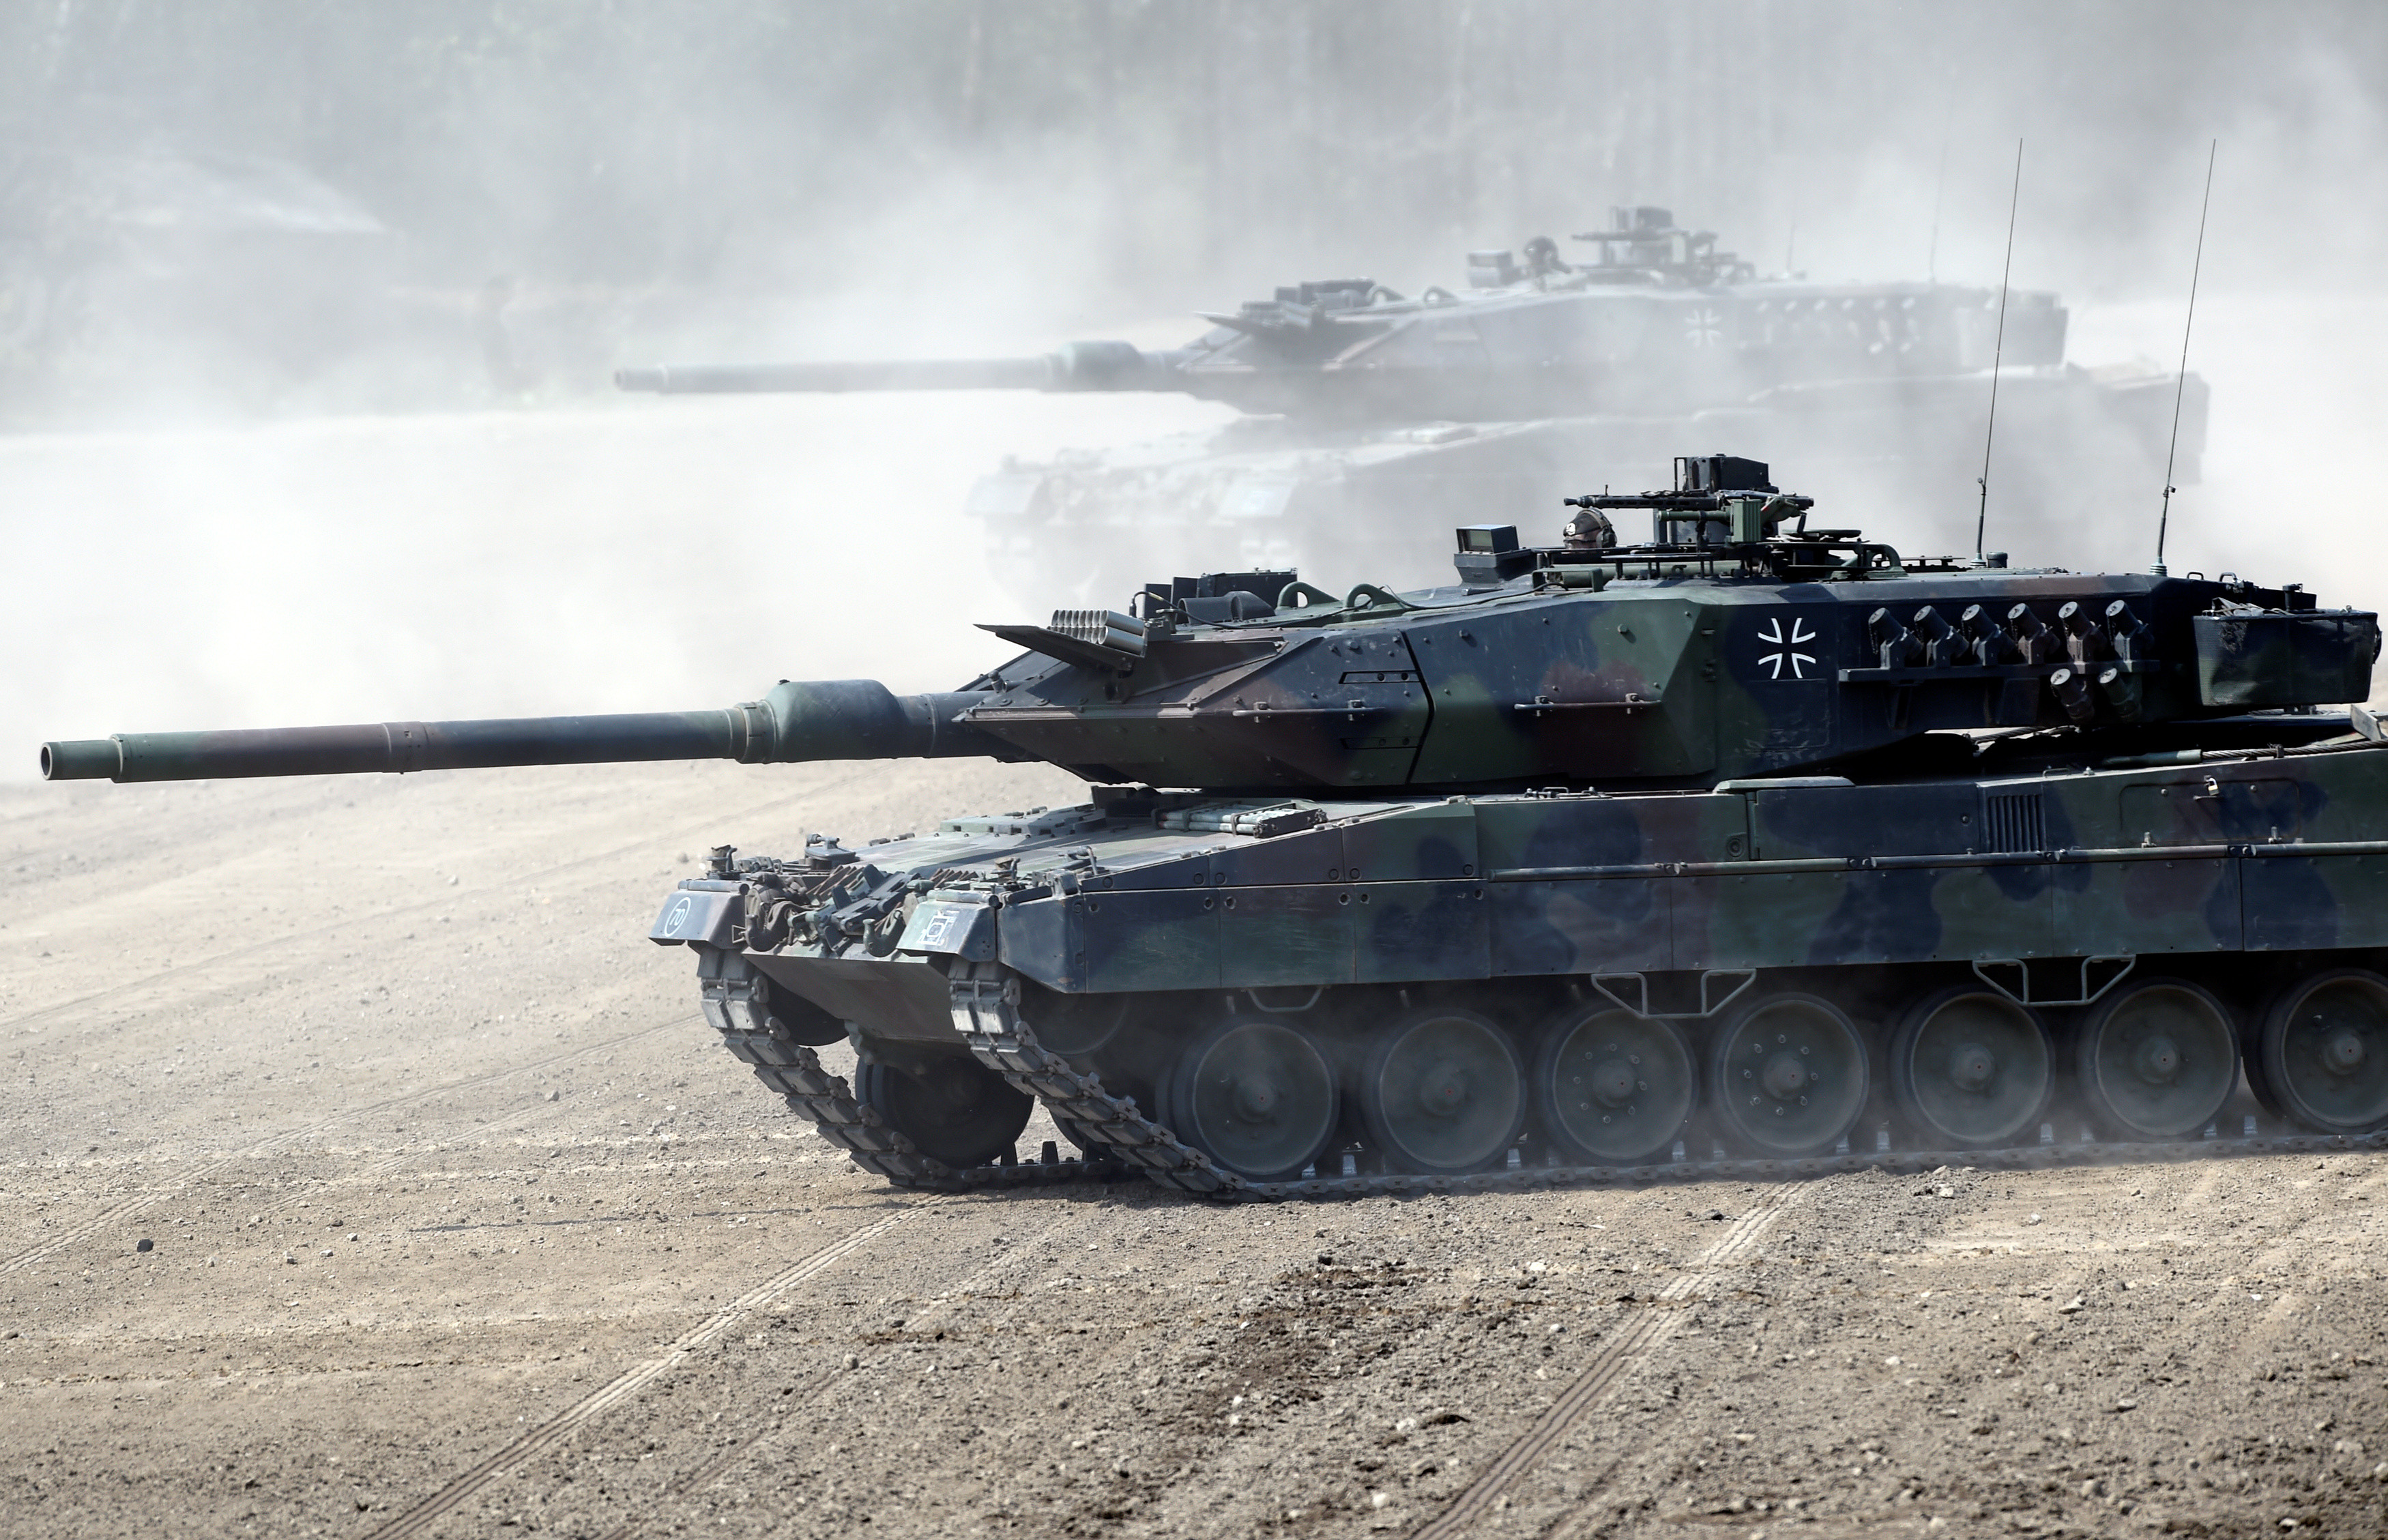 C'est officiel : Le Canada va transférer 4 chars Leopard 2 à l'Ukraine